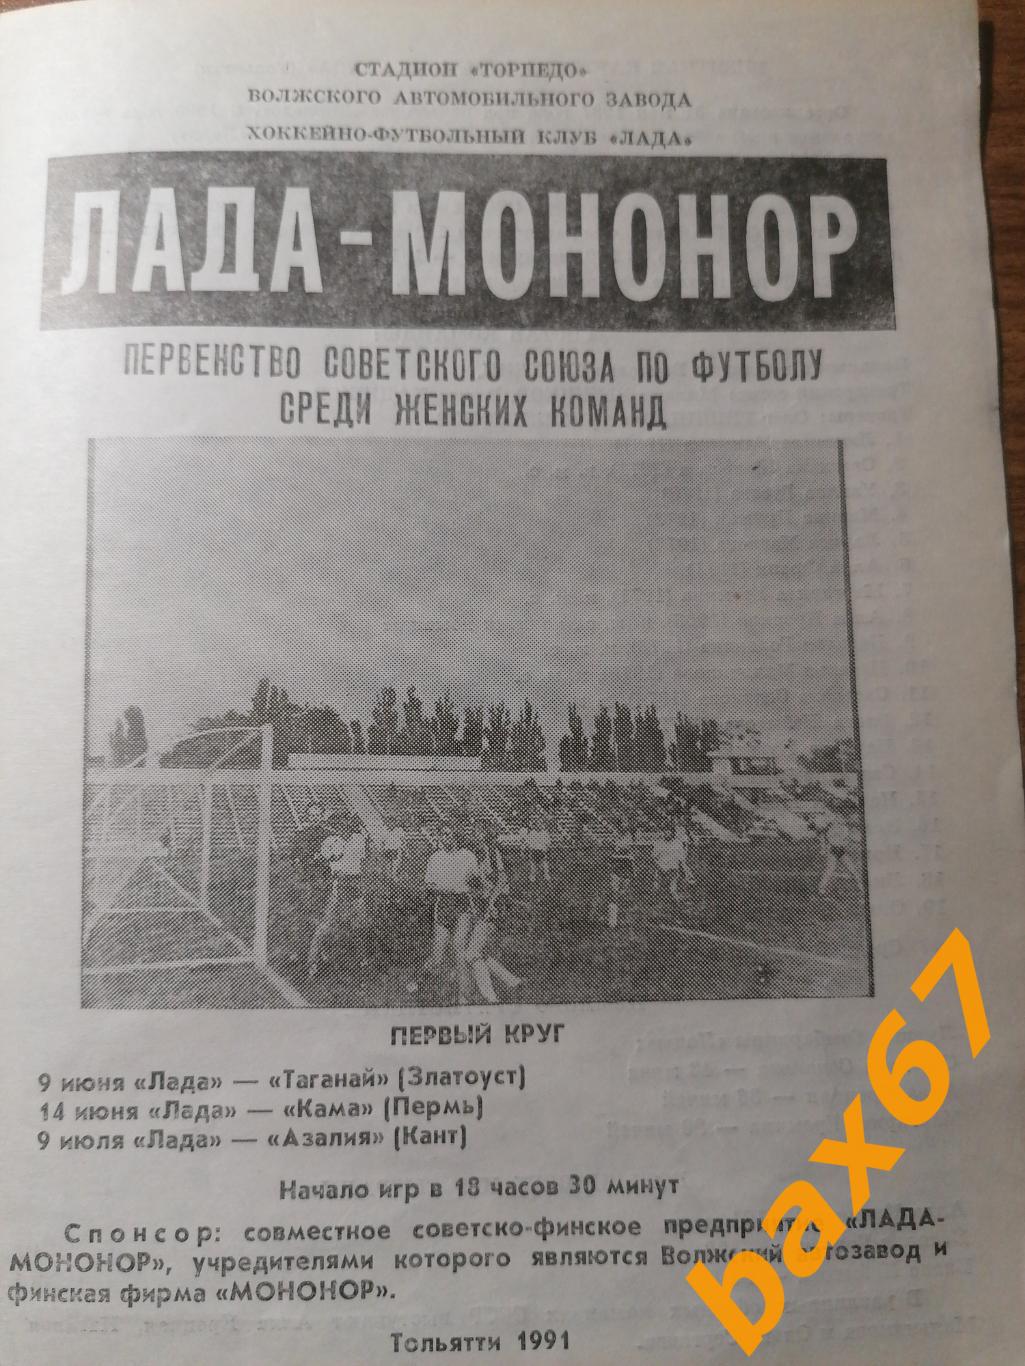 Лада Тольятти - Таганай Златоуст, Кама Пермь, Азалия Кант 9-14-9.07.1991